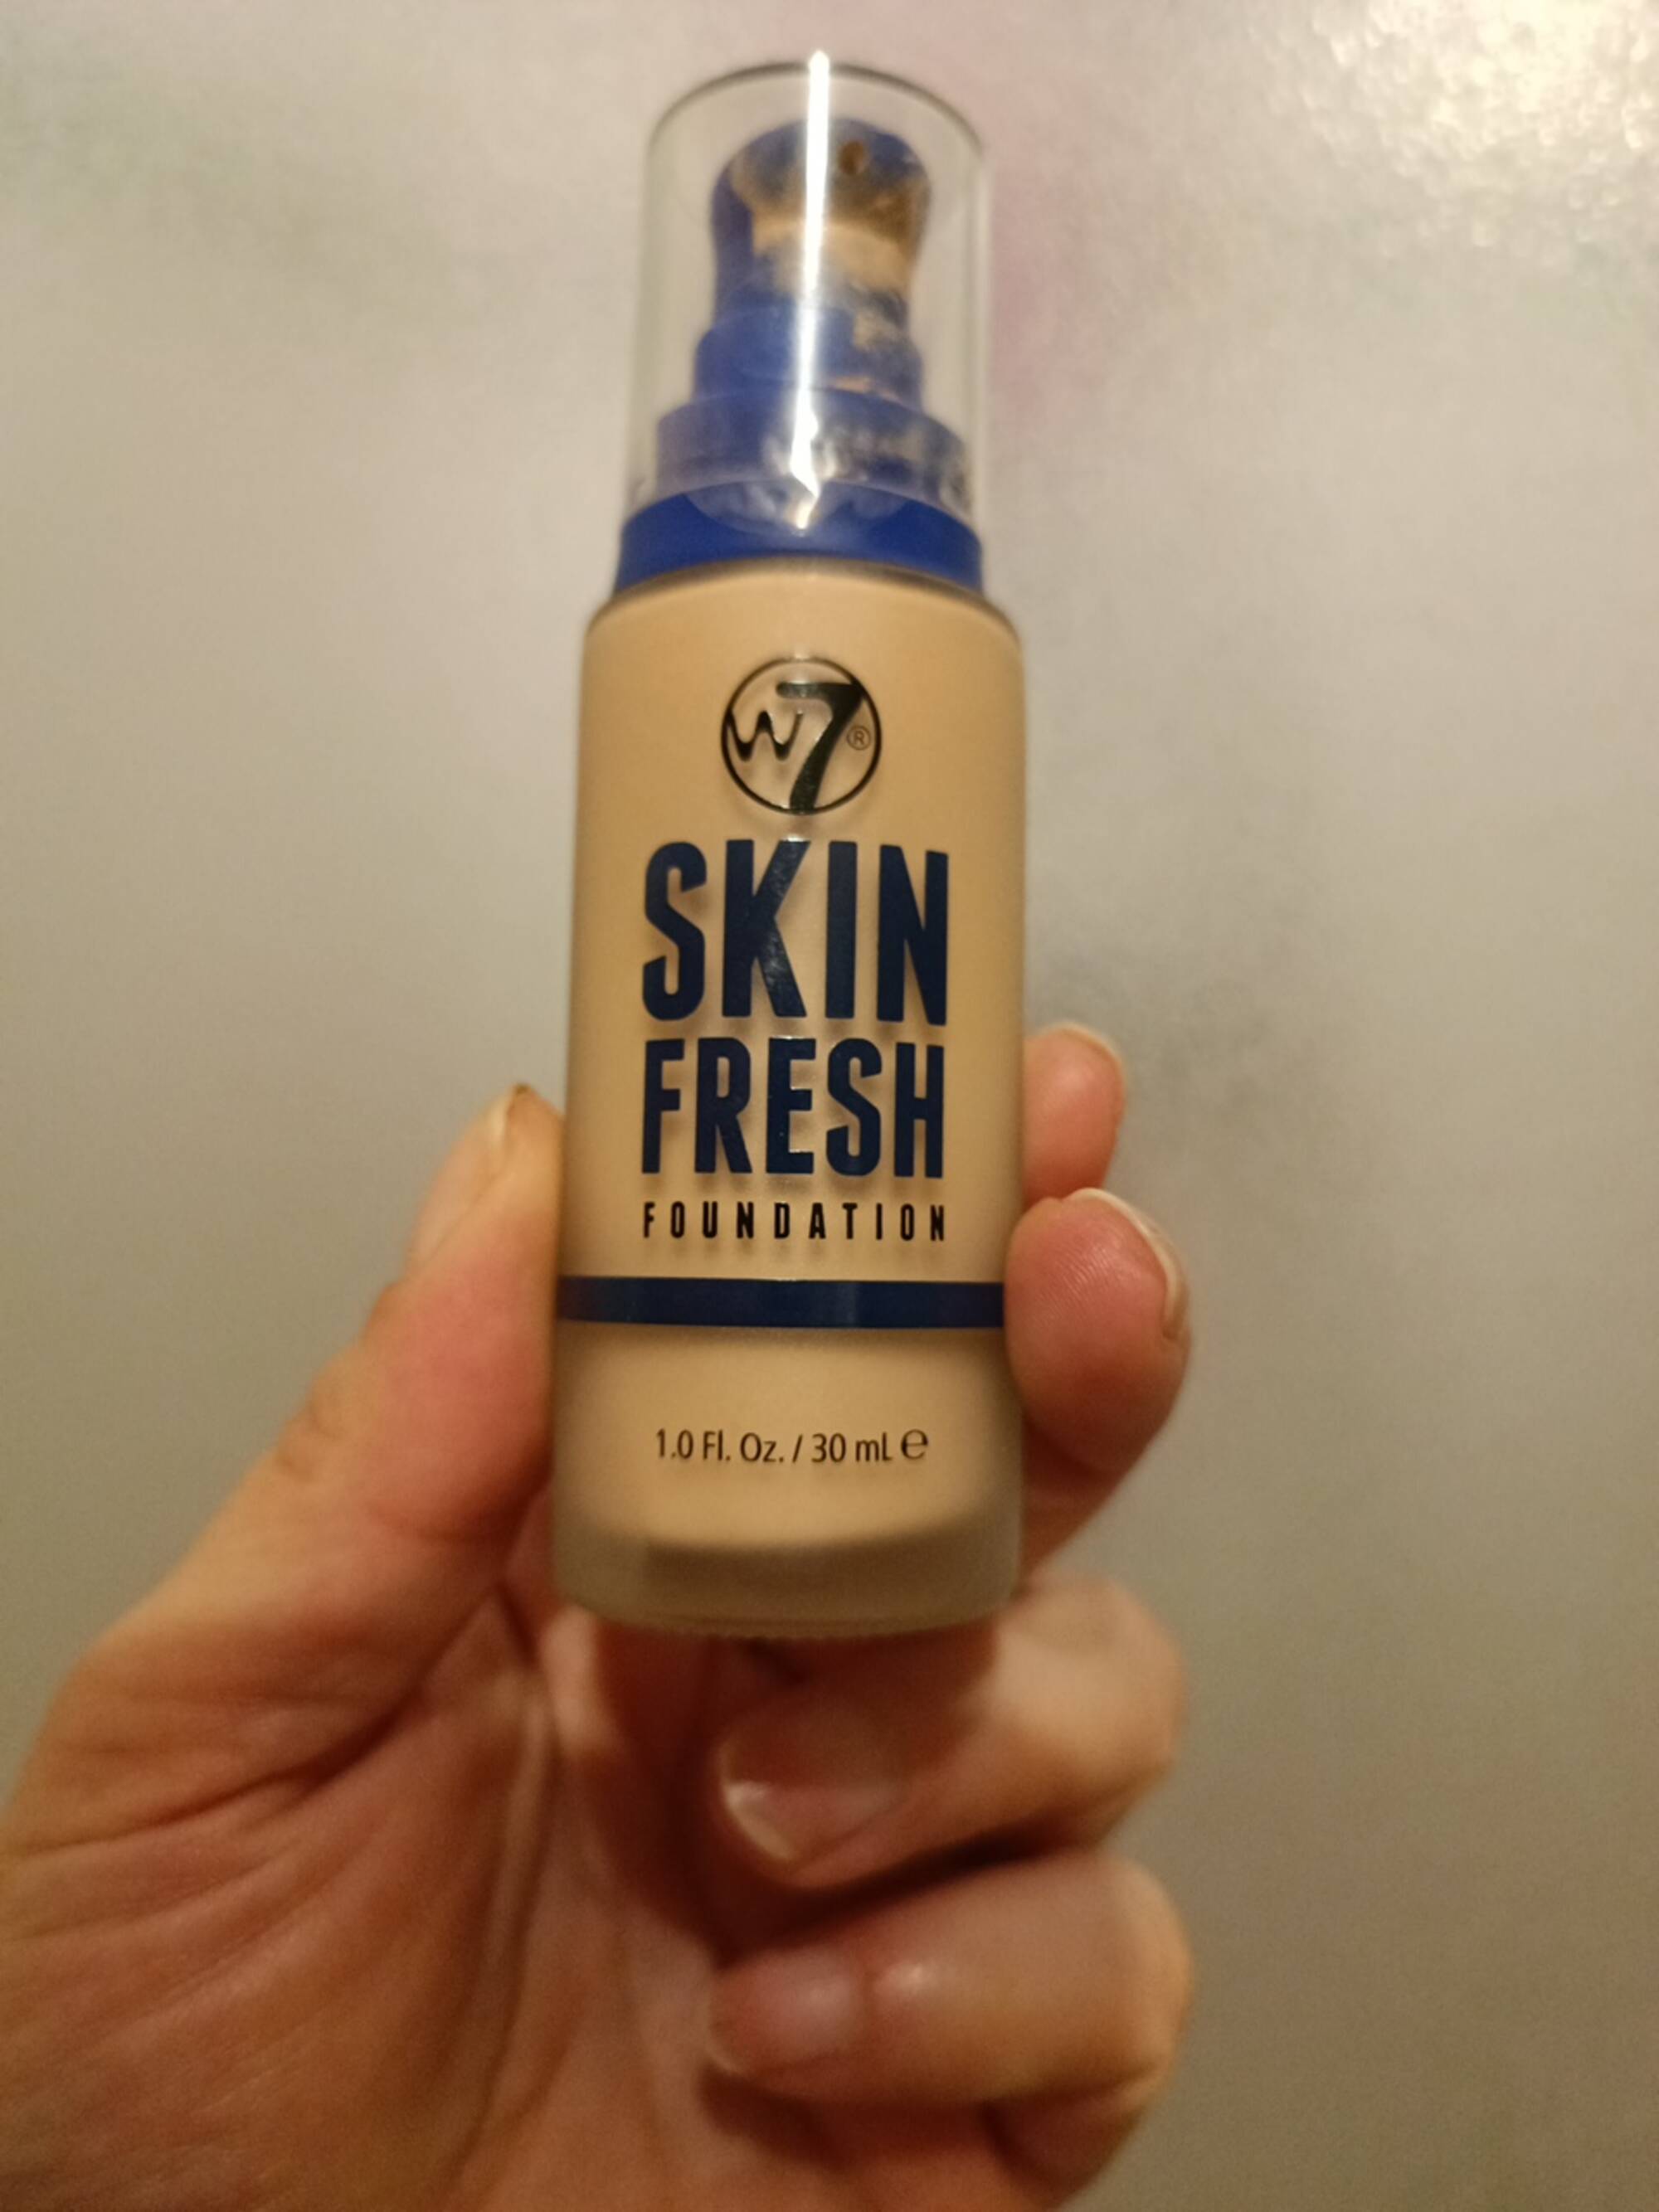 W7 - Skin fresh foundation